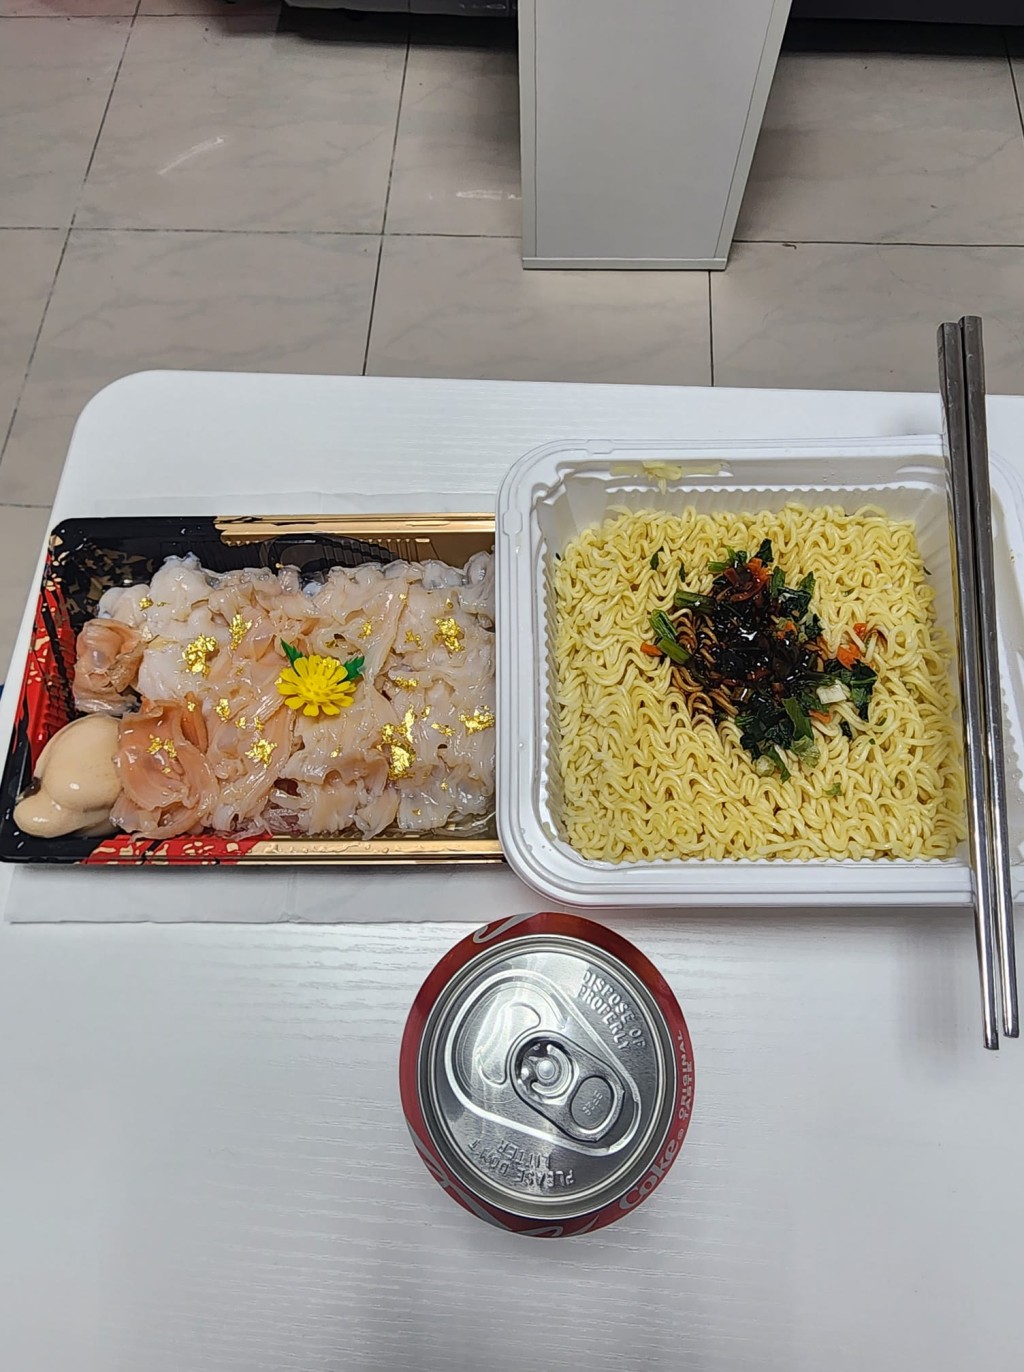 另一以汽水送的豪食配搭。fb「香港街市魚類海鮮研究社」圖片